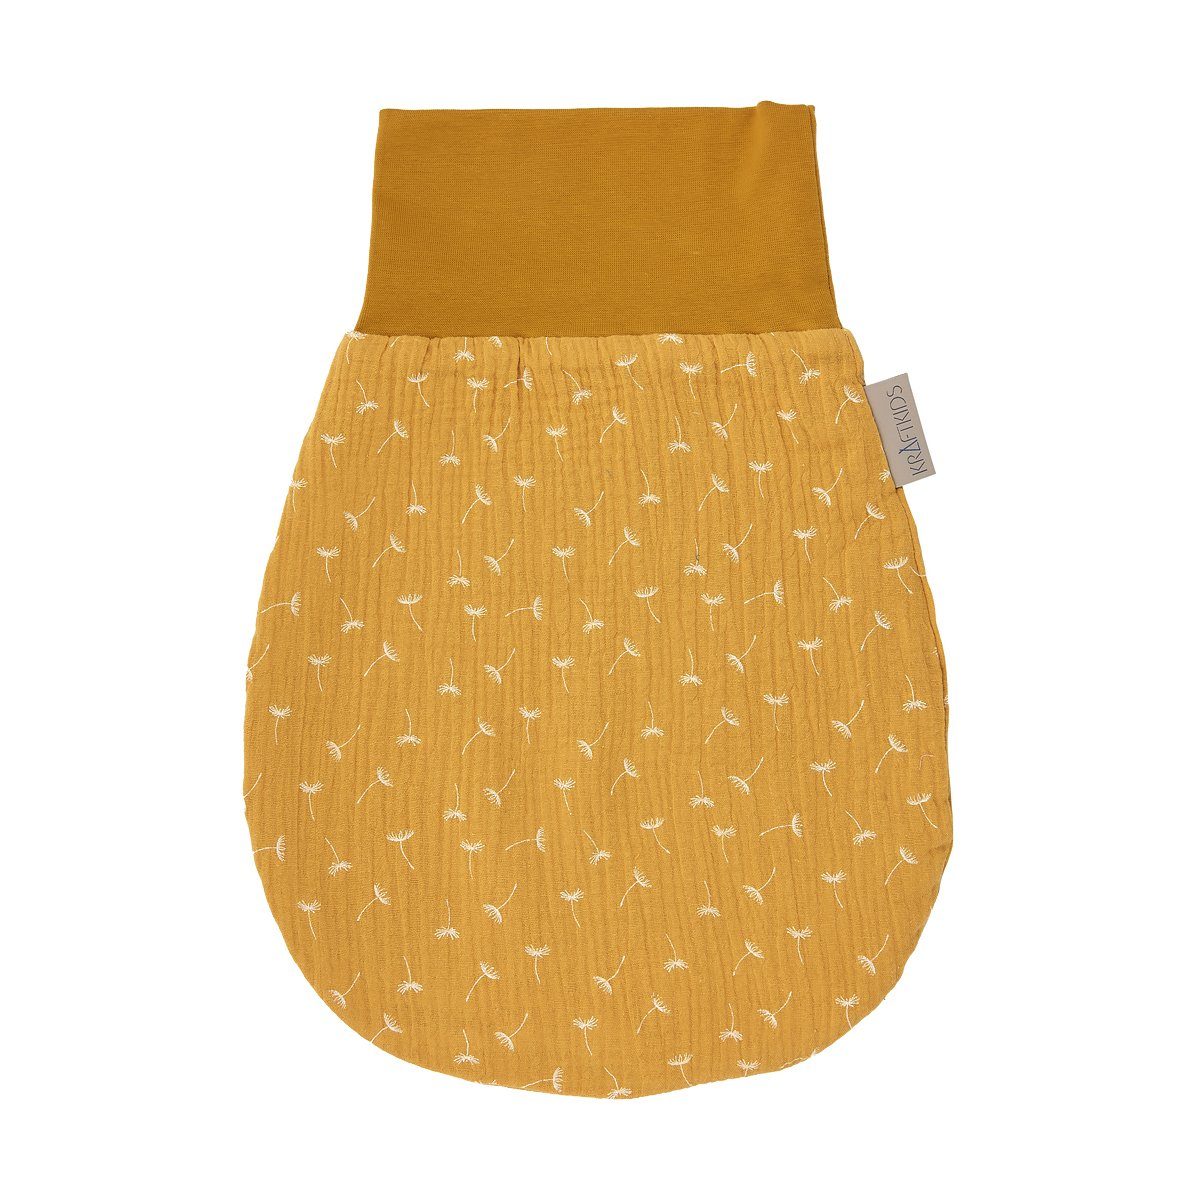 KraftKids Babyschlafsack Musselin gelb Pusteblumen, Herbst/Winter-Variante, 100% Baumwolle, hochwärtiger Stoff, Innen warmer Fleece